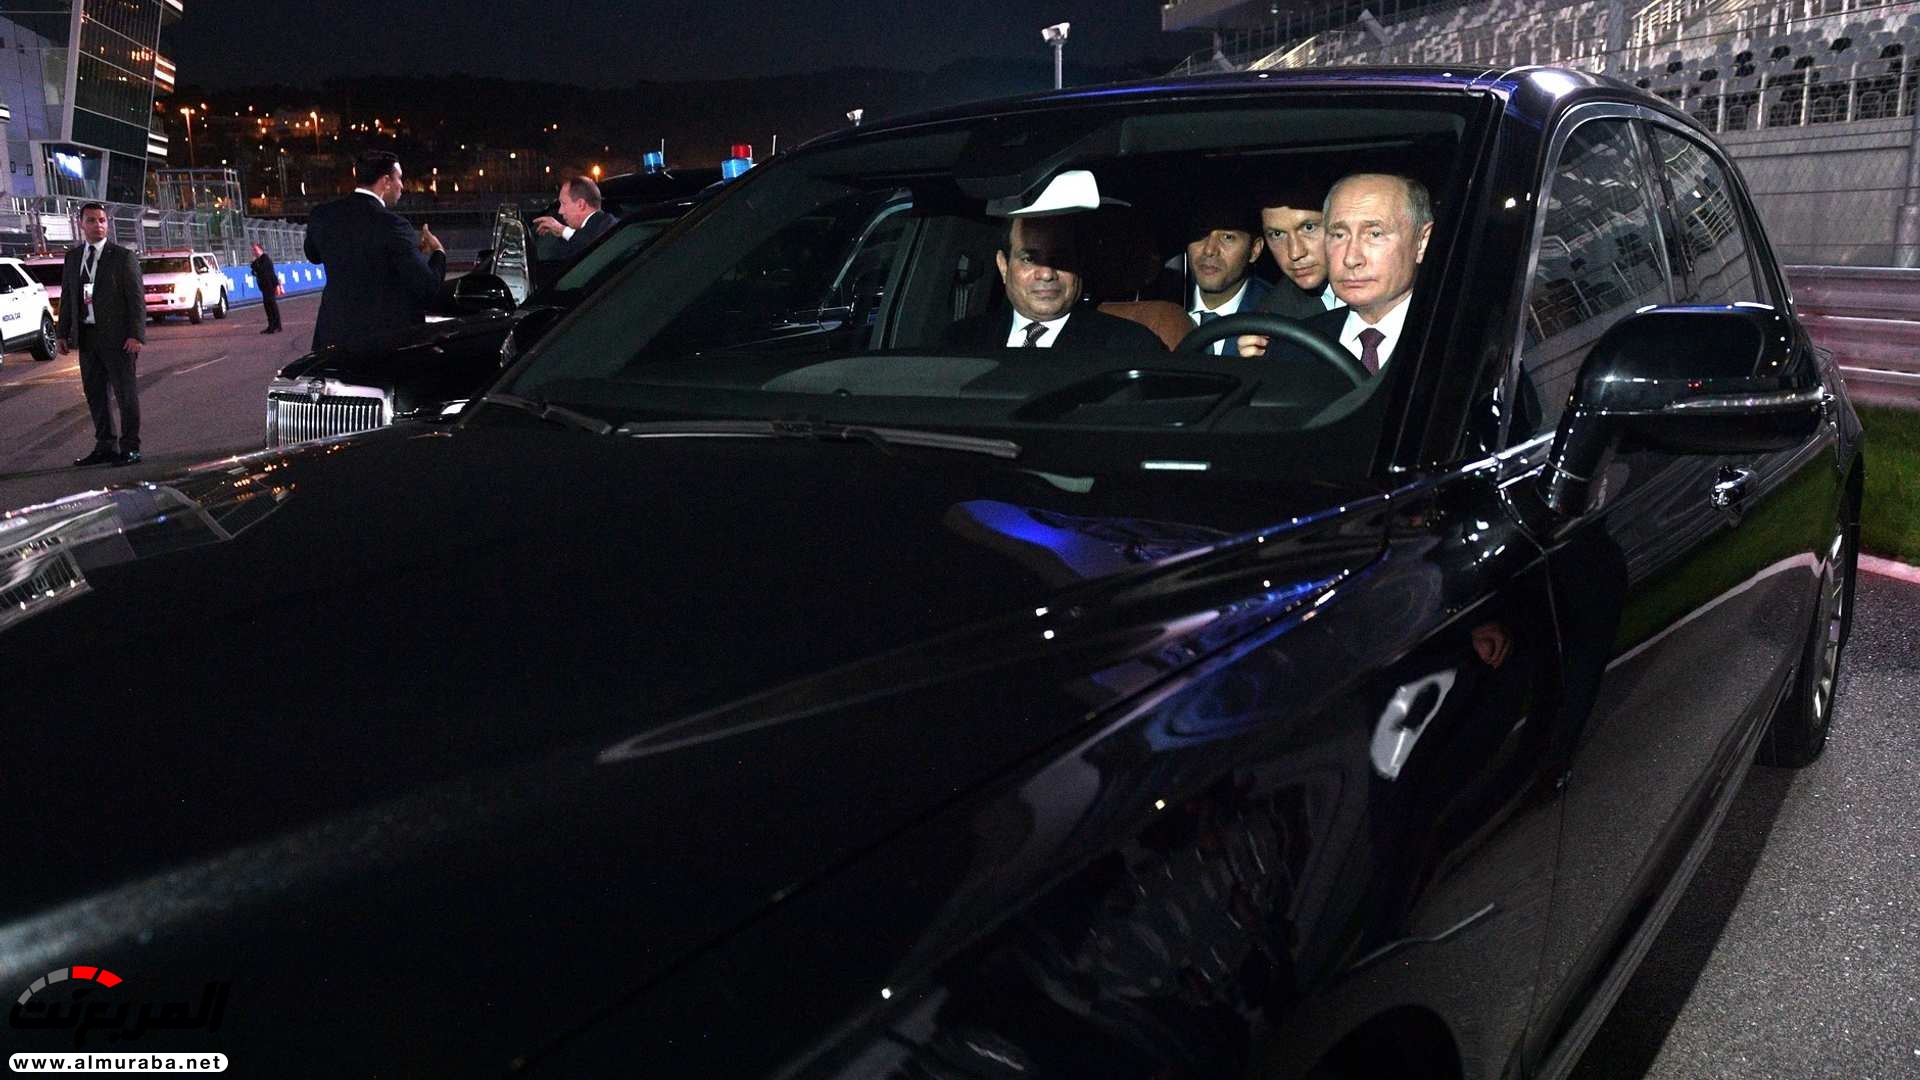 "بالصور" بوتين يصطحب السيسي في جولة داخل ليموزين يقودها بنفسه 22